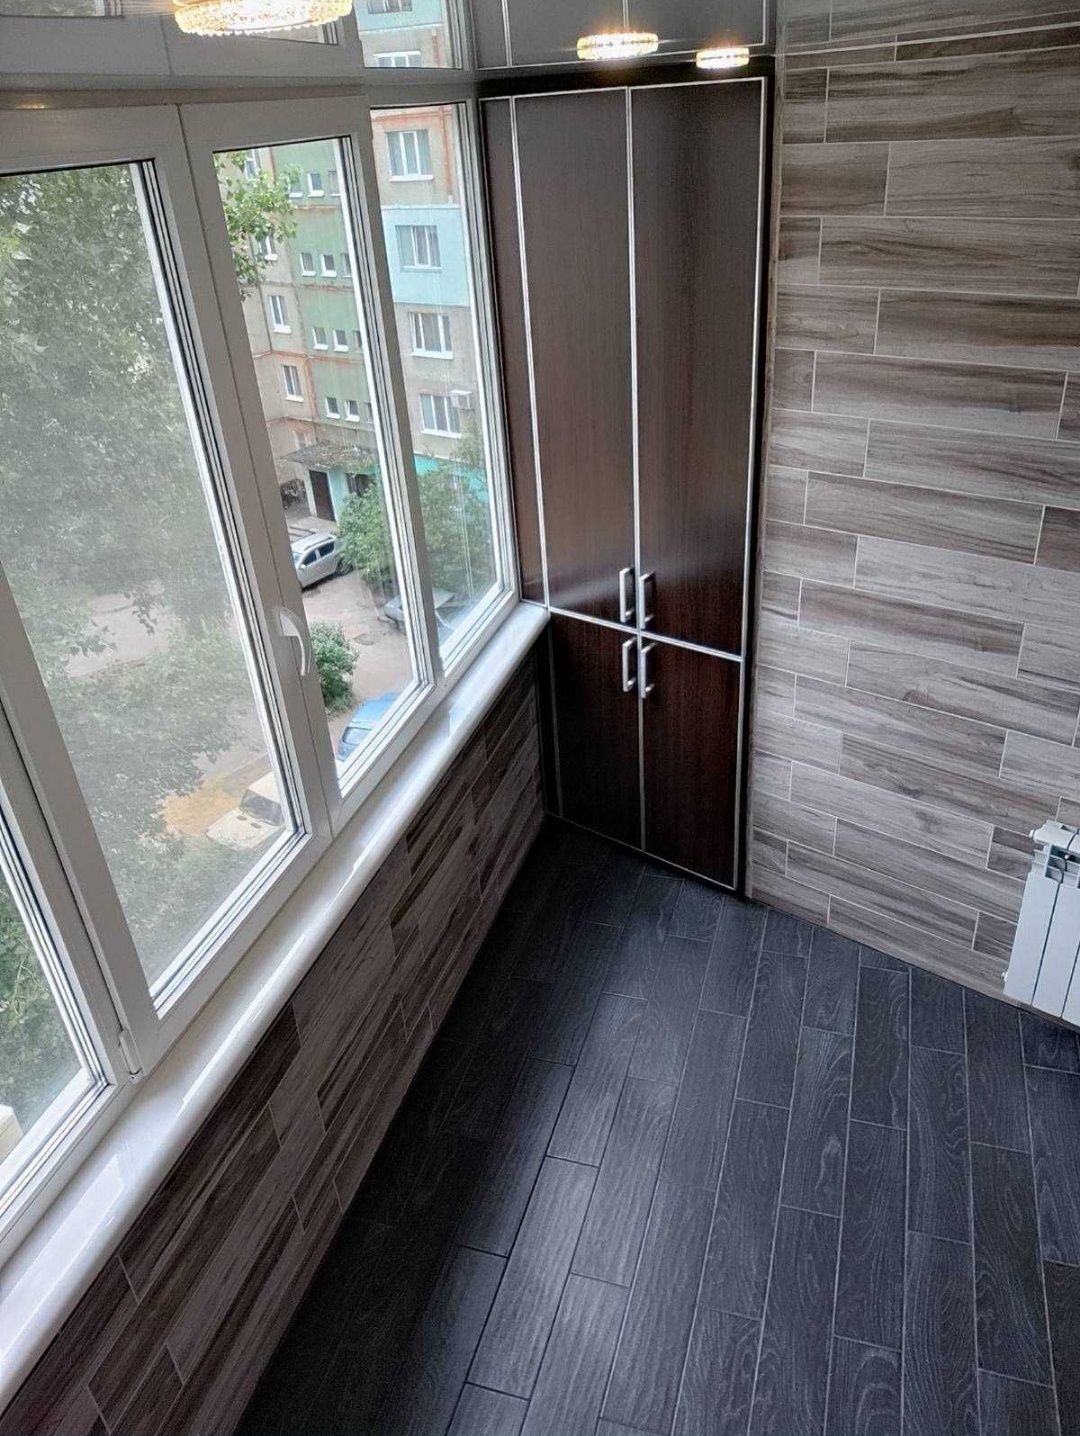 Продам 3-кімнатну квартиру на Леваді в місті Полтава від власника